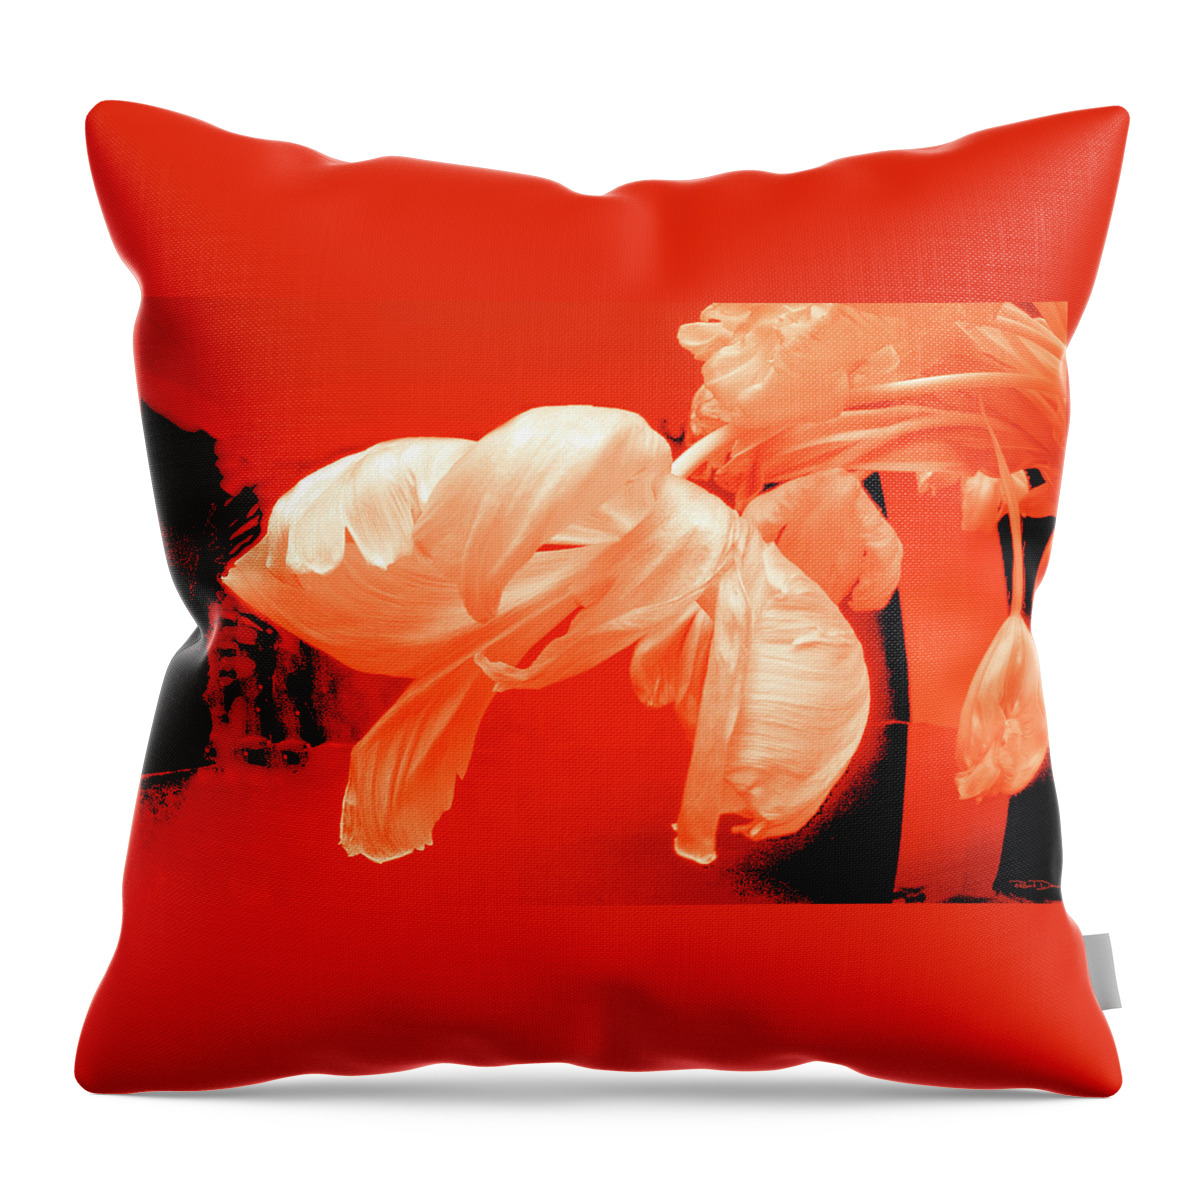 Tulip Throw Pillow featuring the photograph After Dark by Robert Dann